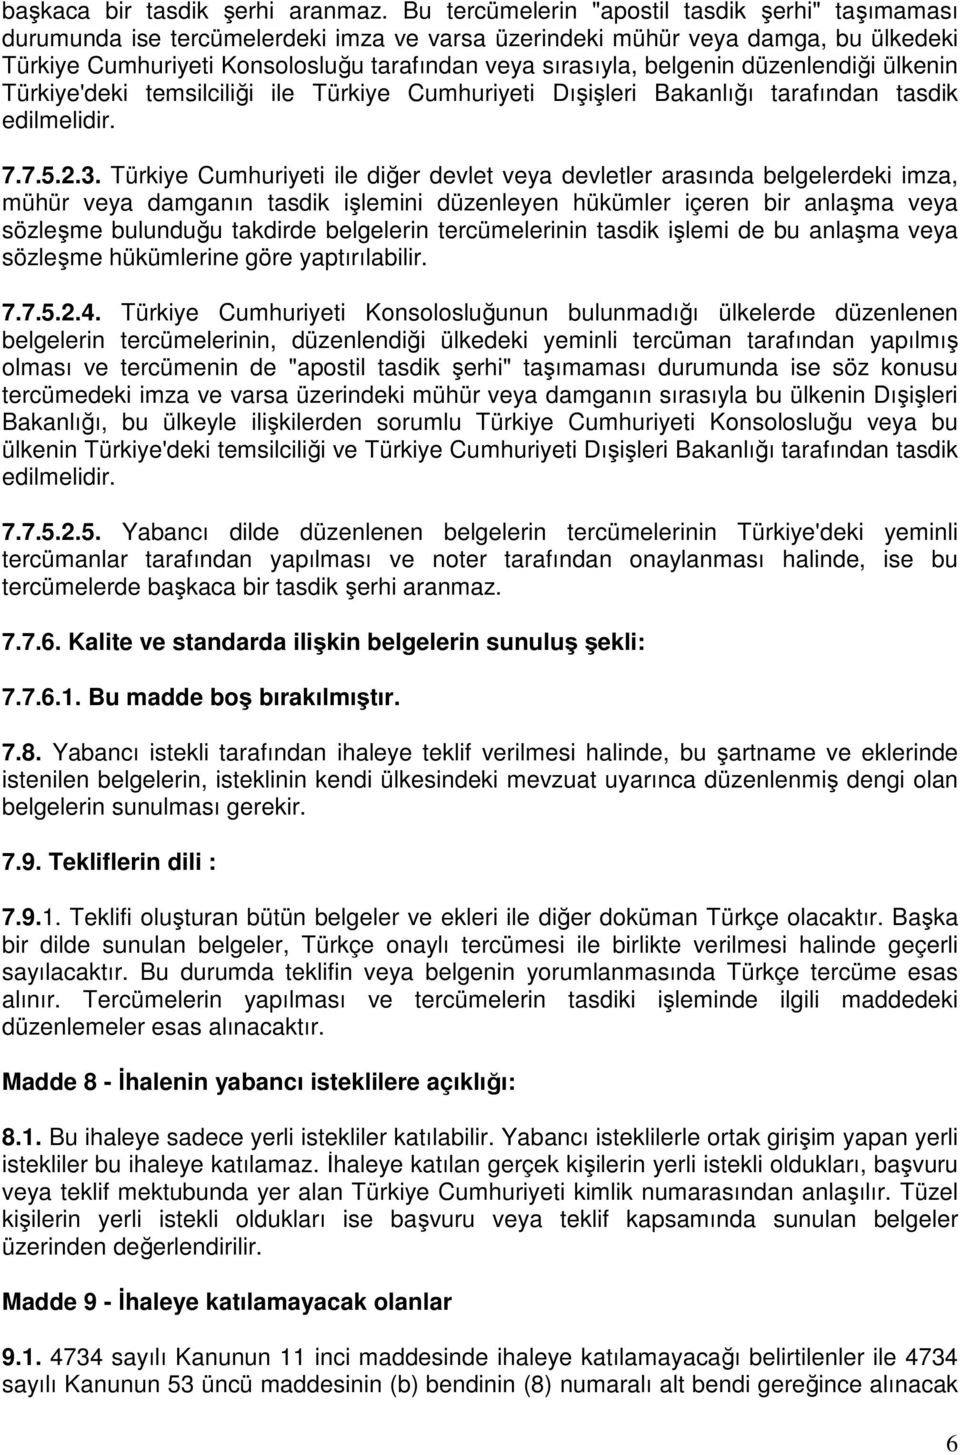 belgenin düzenlendiği ülkenin Türkiye'deki temsilciliği ile Türkiye Cumhuriyeti Dışişleri Bakanlığı tarafından tasdik edilmelidir. 7.7.5.2.3.